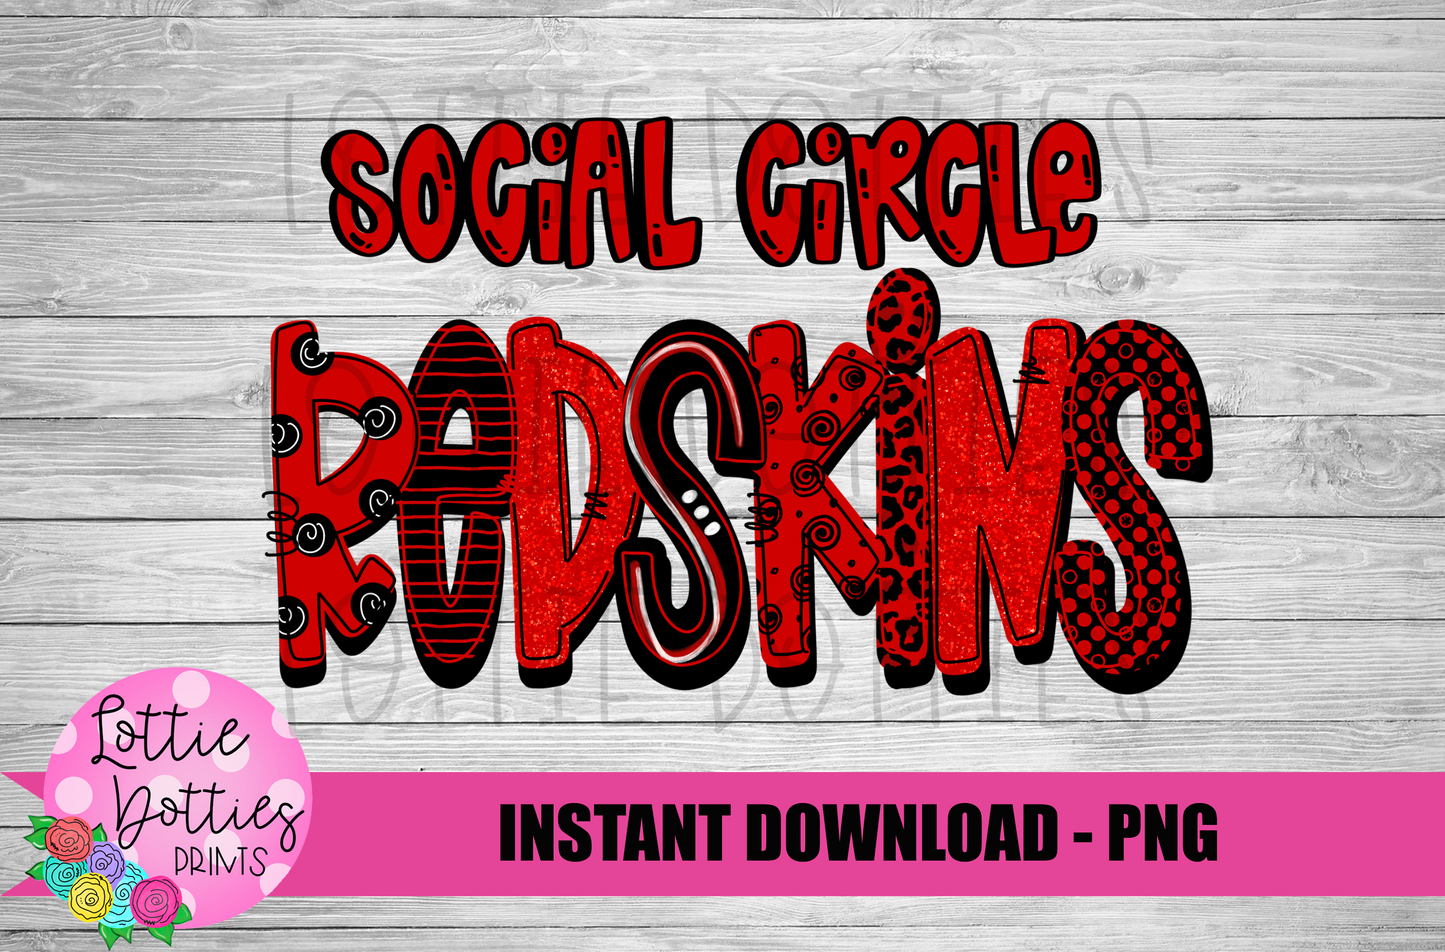 Social Circle Redskins PNG - Redskins Sublimation - Digital Design